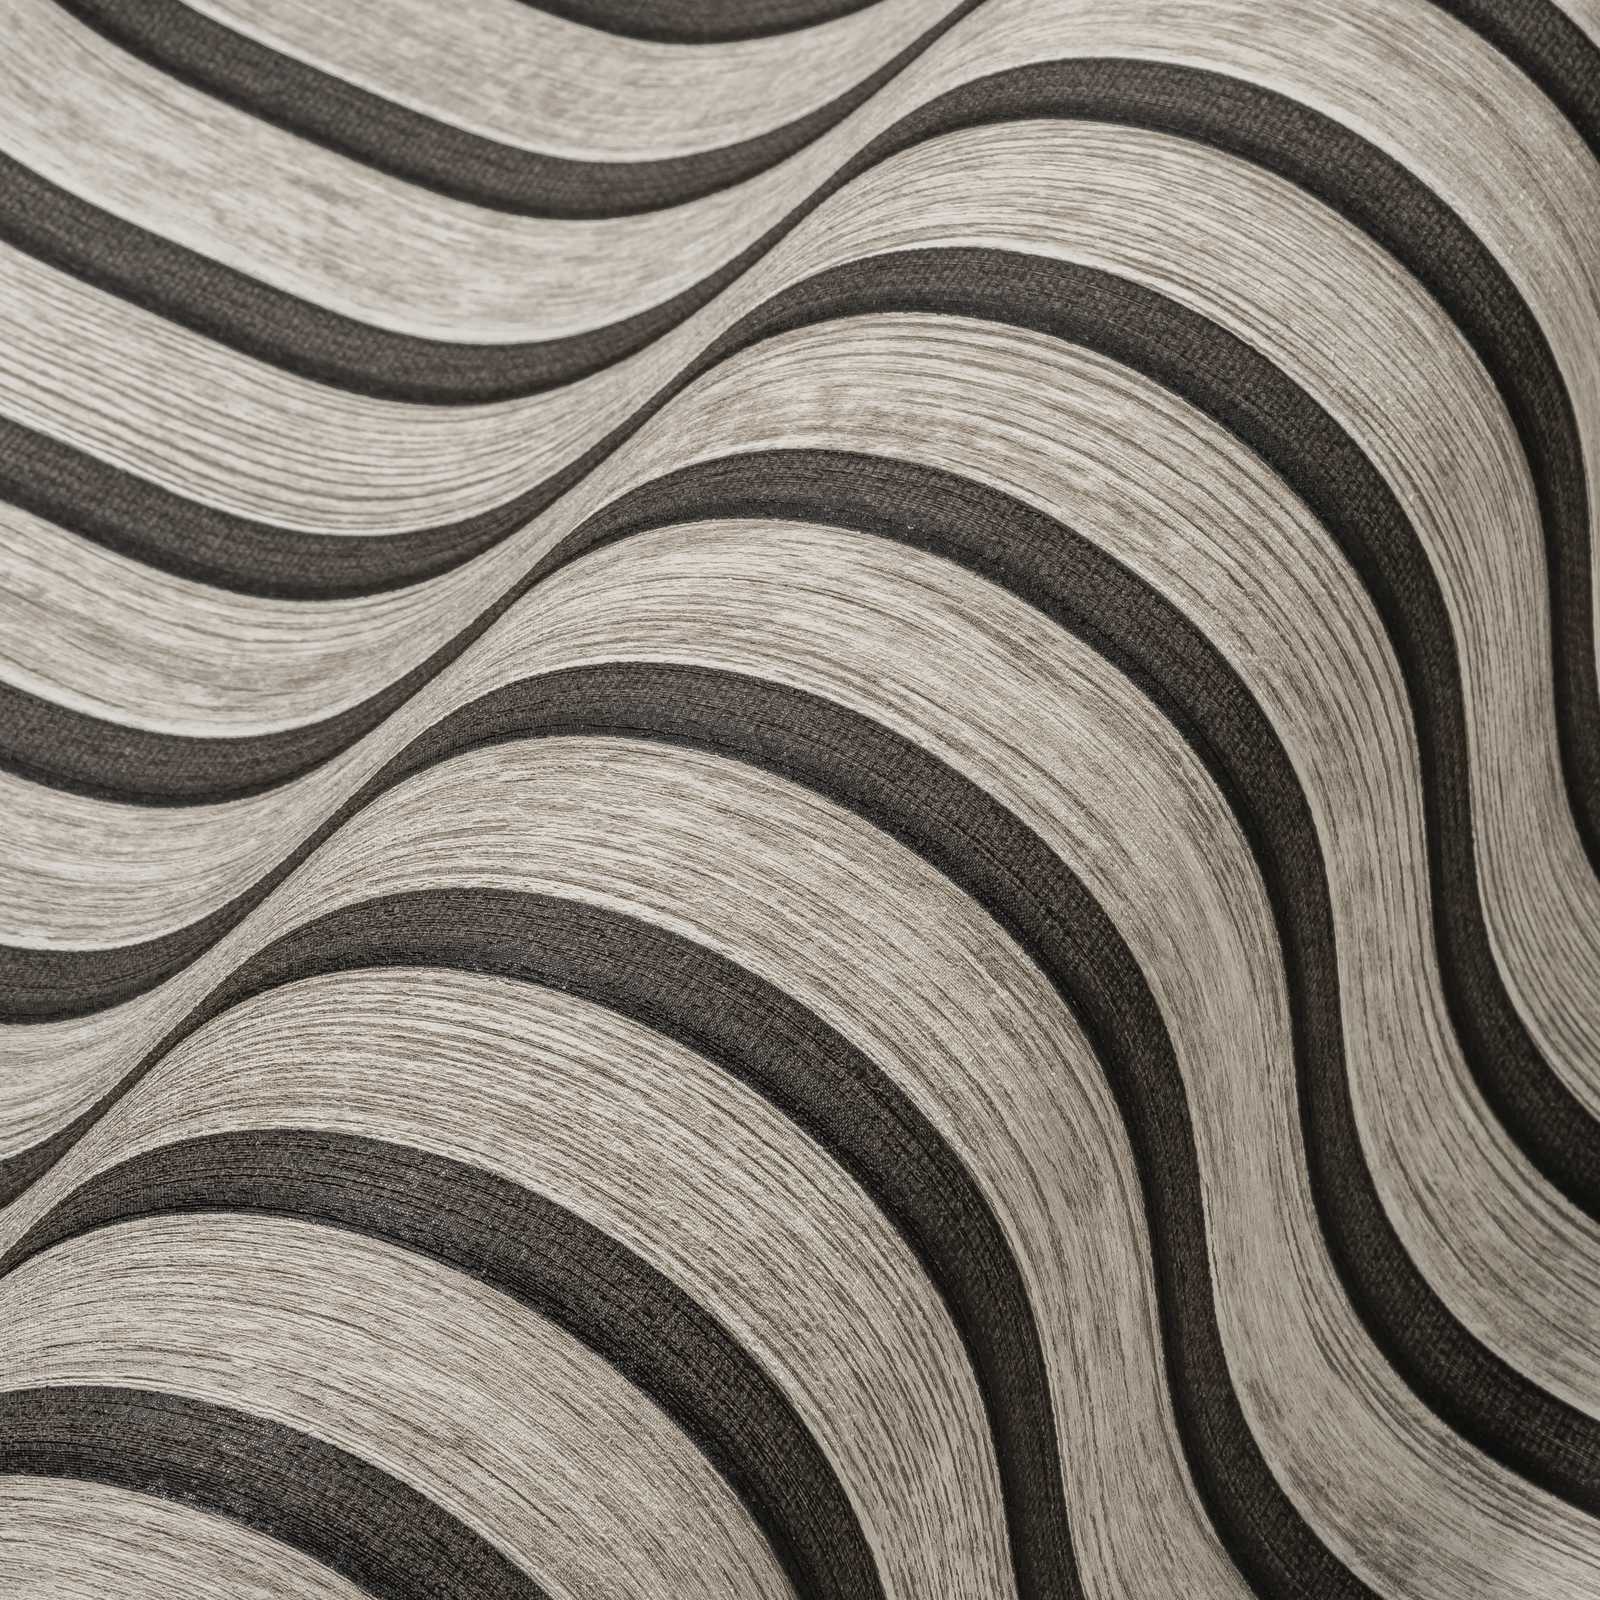             Holzpaneel Tapete mit feiner Struktur – Grau, Schwarz
        